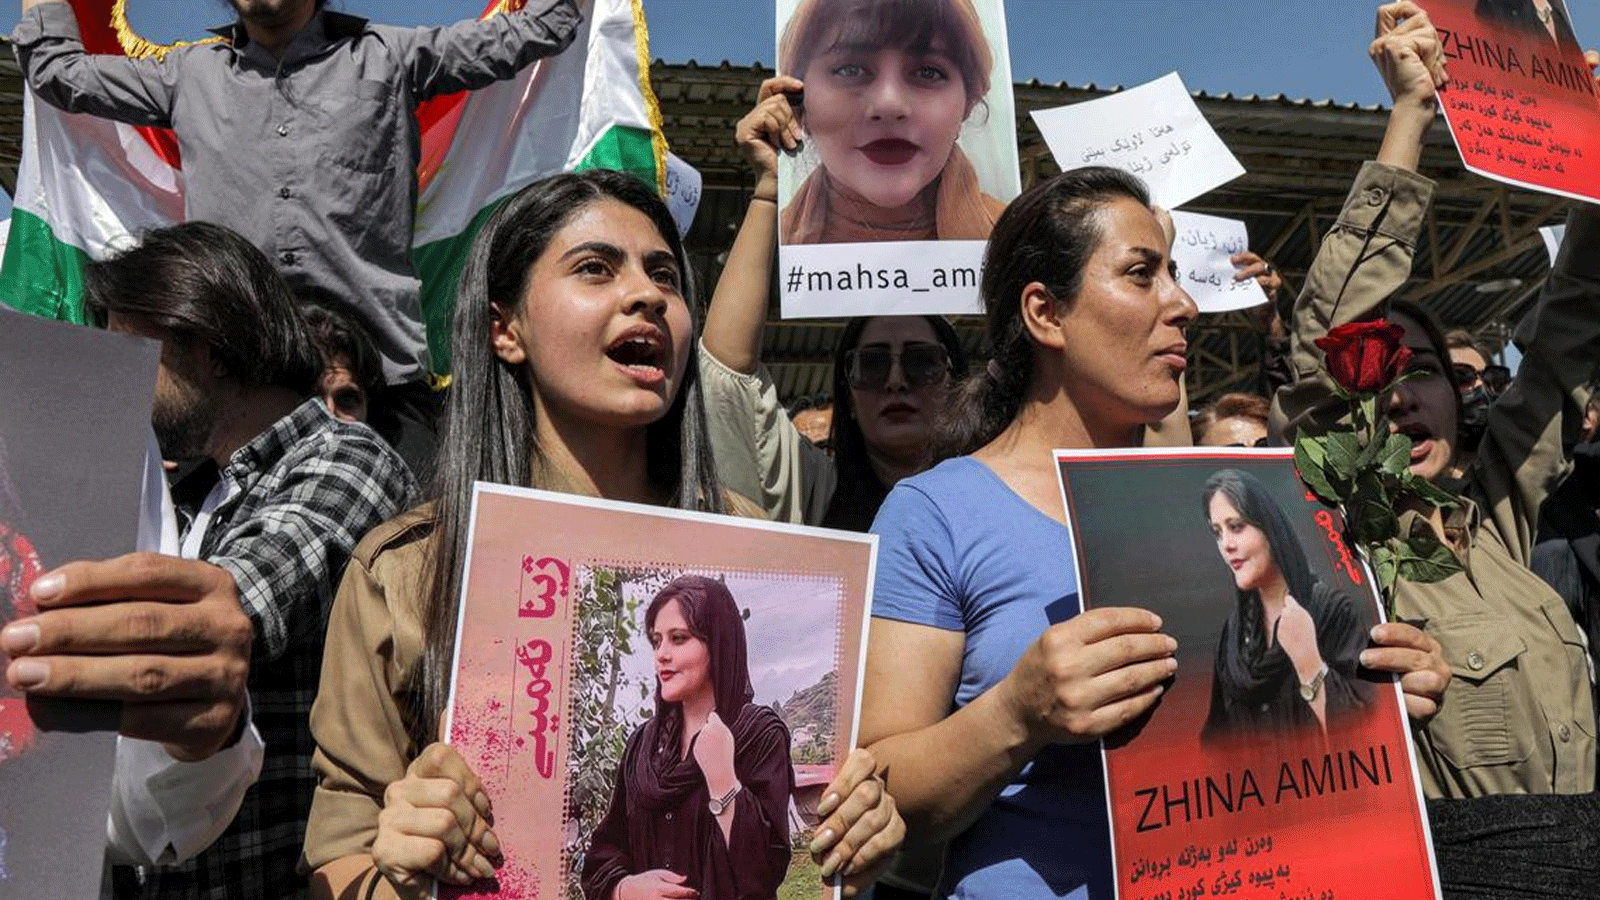 إيرانيون في العراق يحتجون على وفاة مهسا أميني